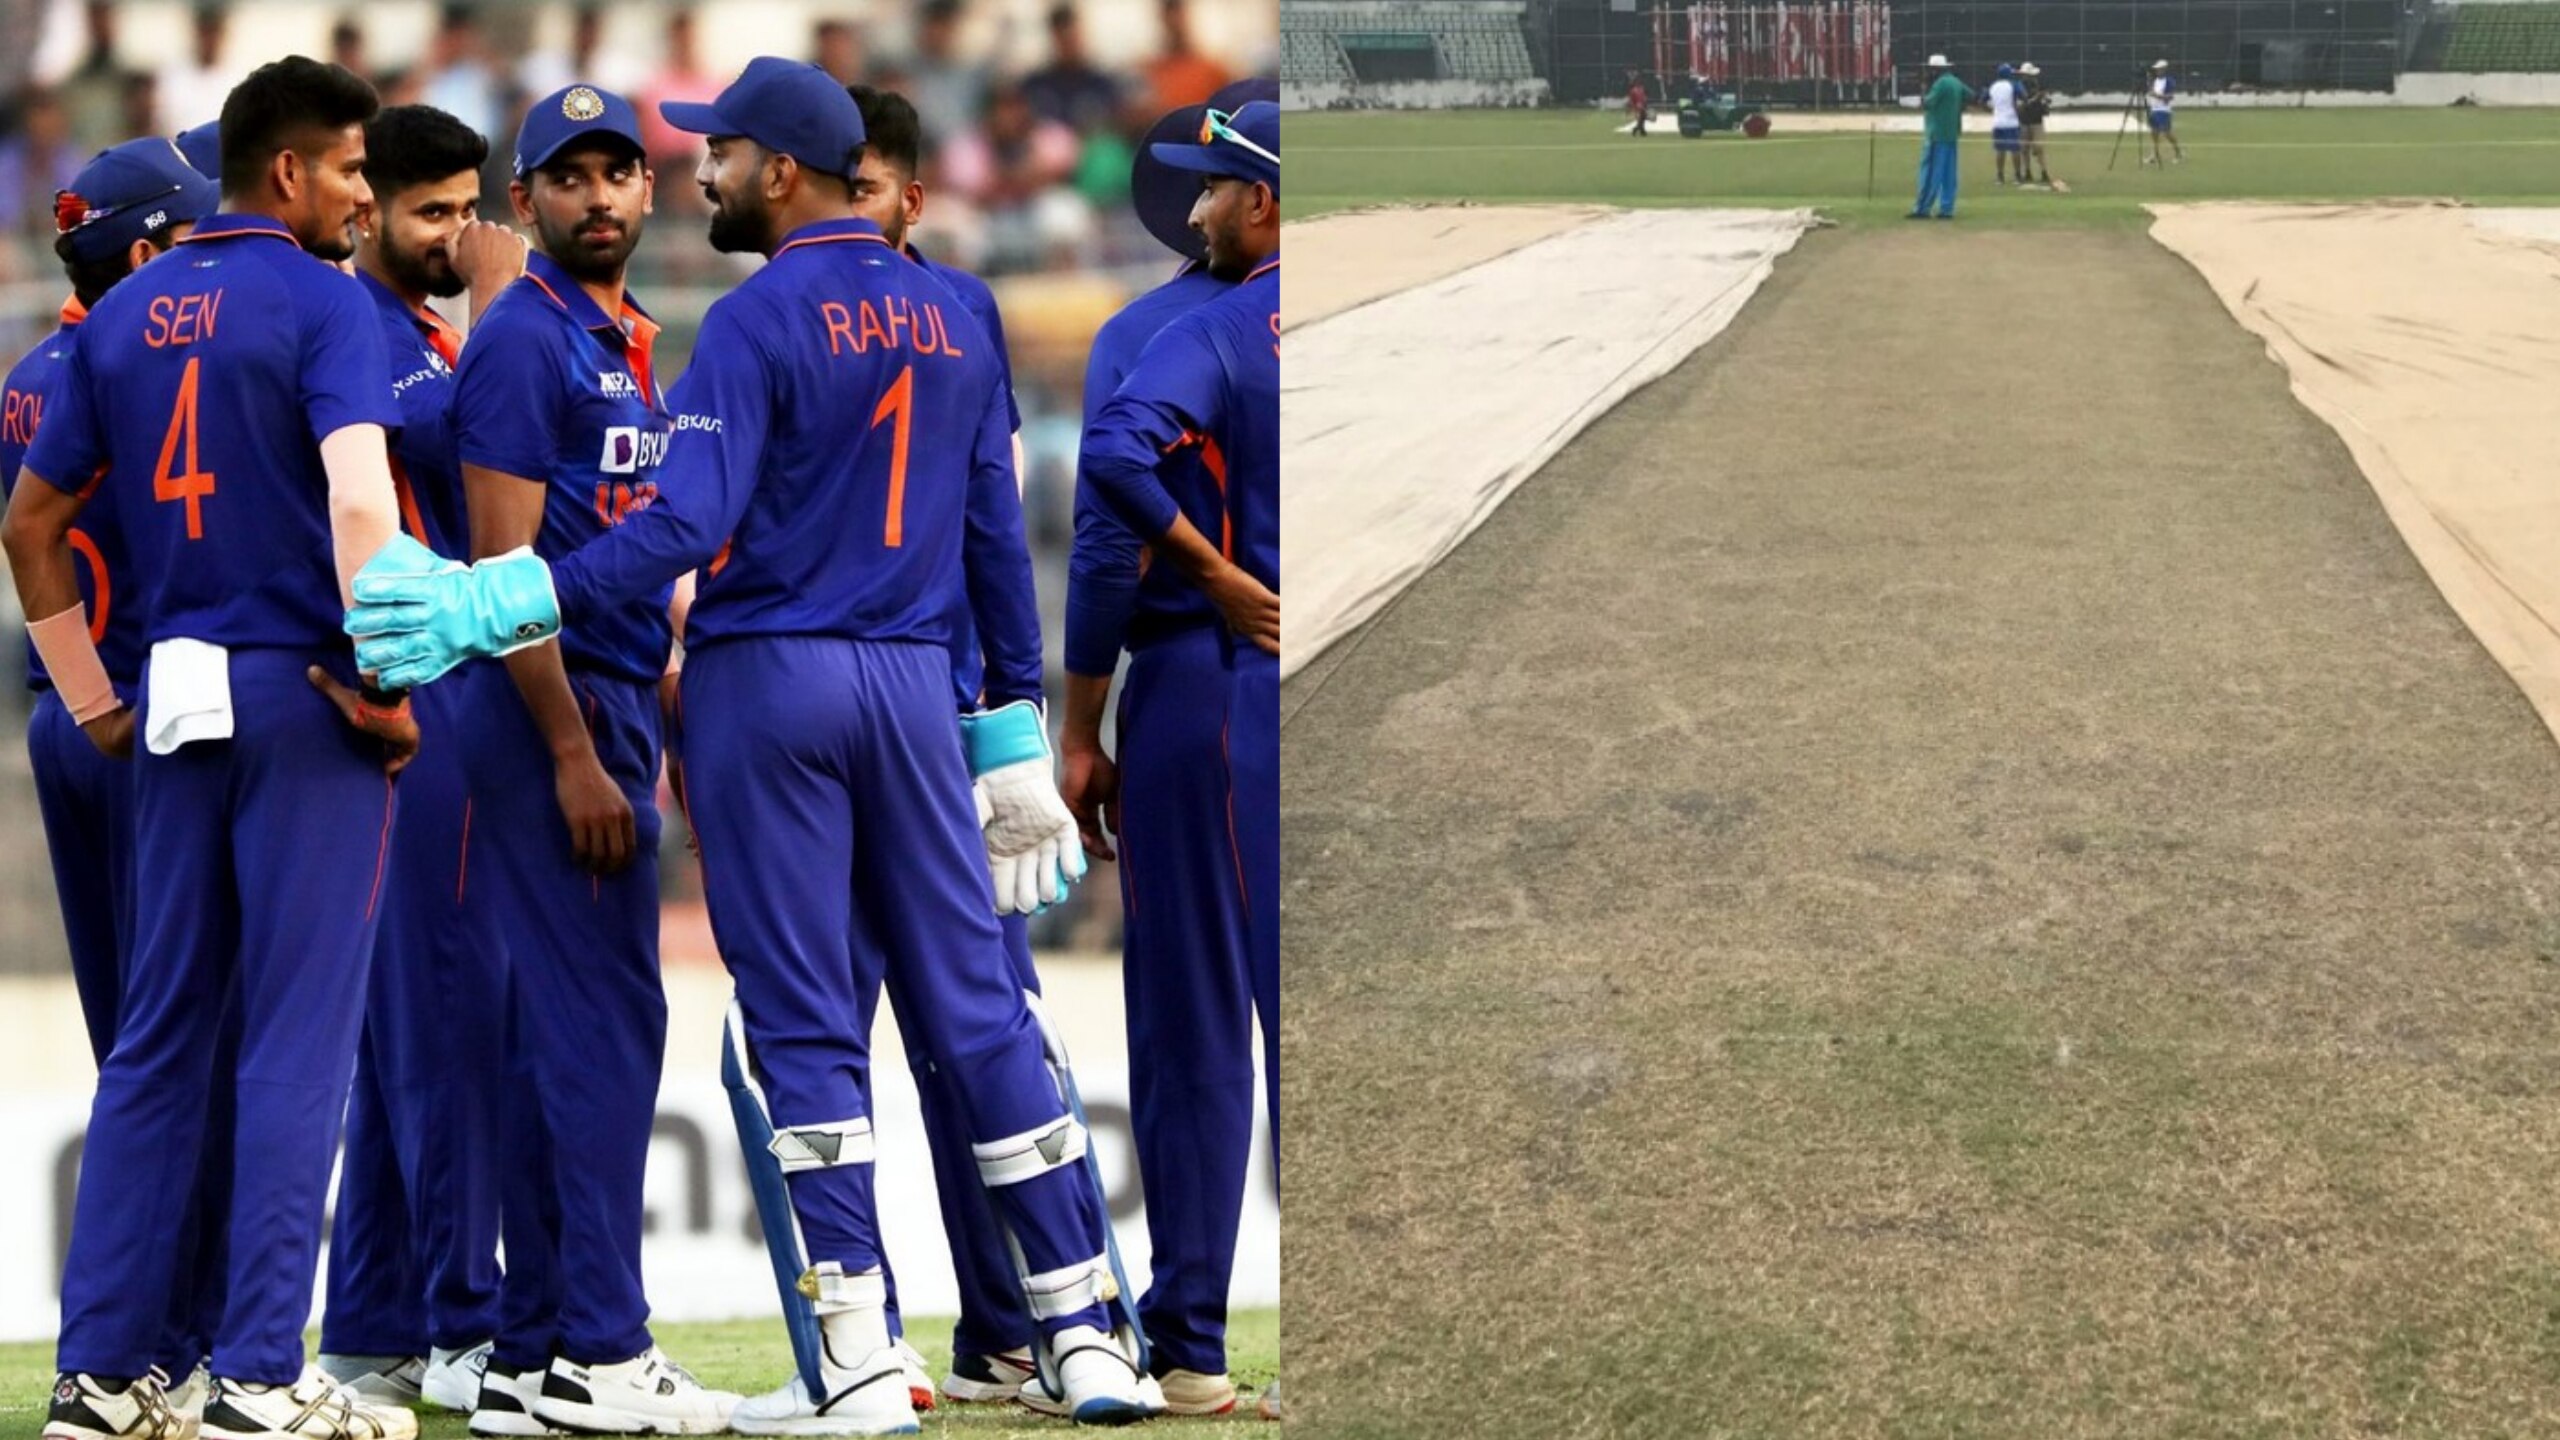 IND vs BAN: दूसरे वनडे में कहर मचाएंगे टीम इंडिया के गेंदबाज, मिलने जा रही ये खतरनाक पिच